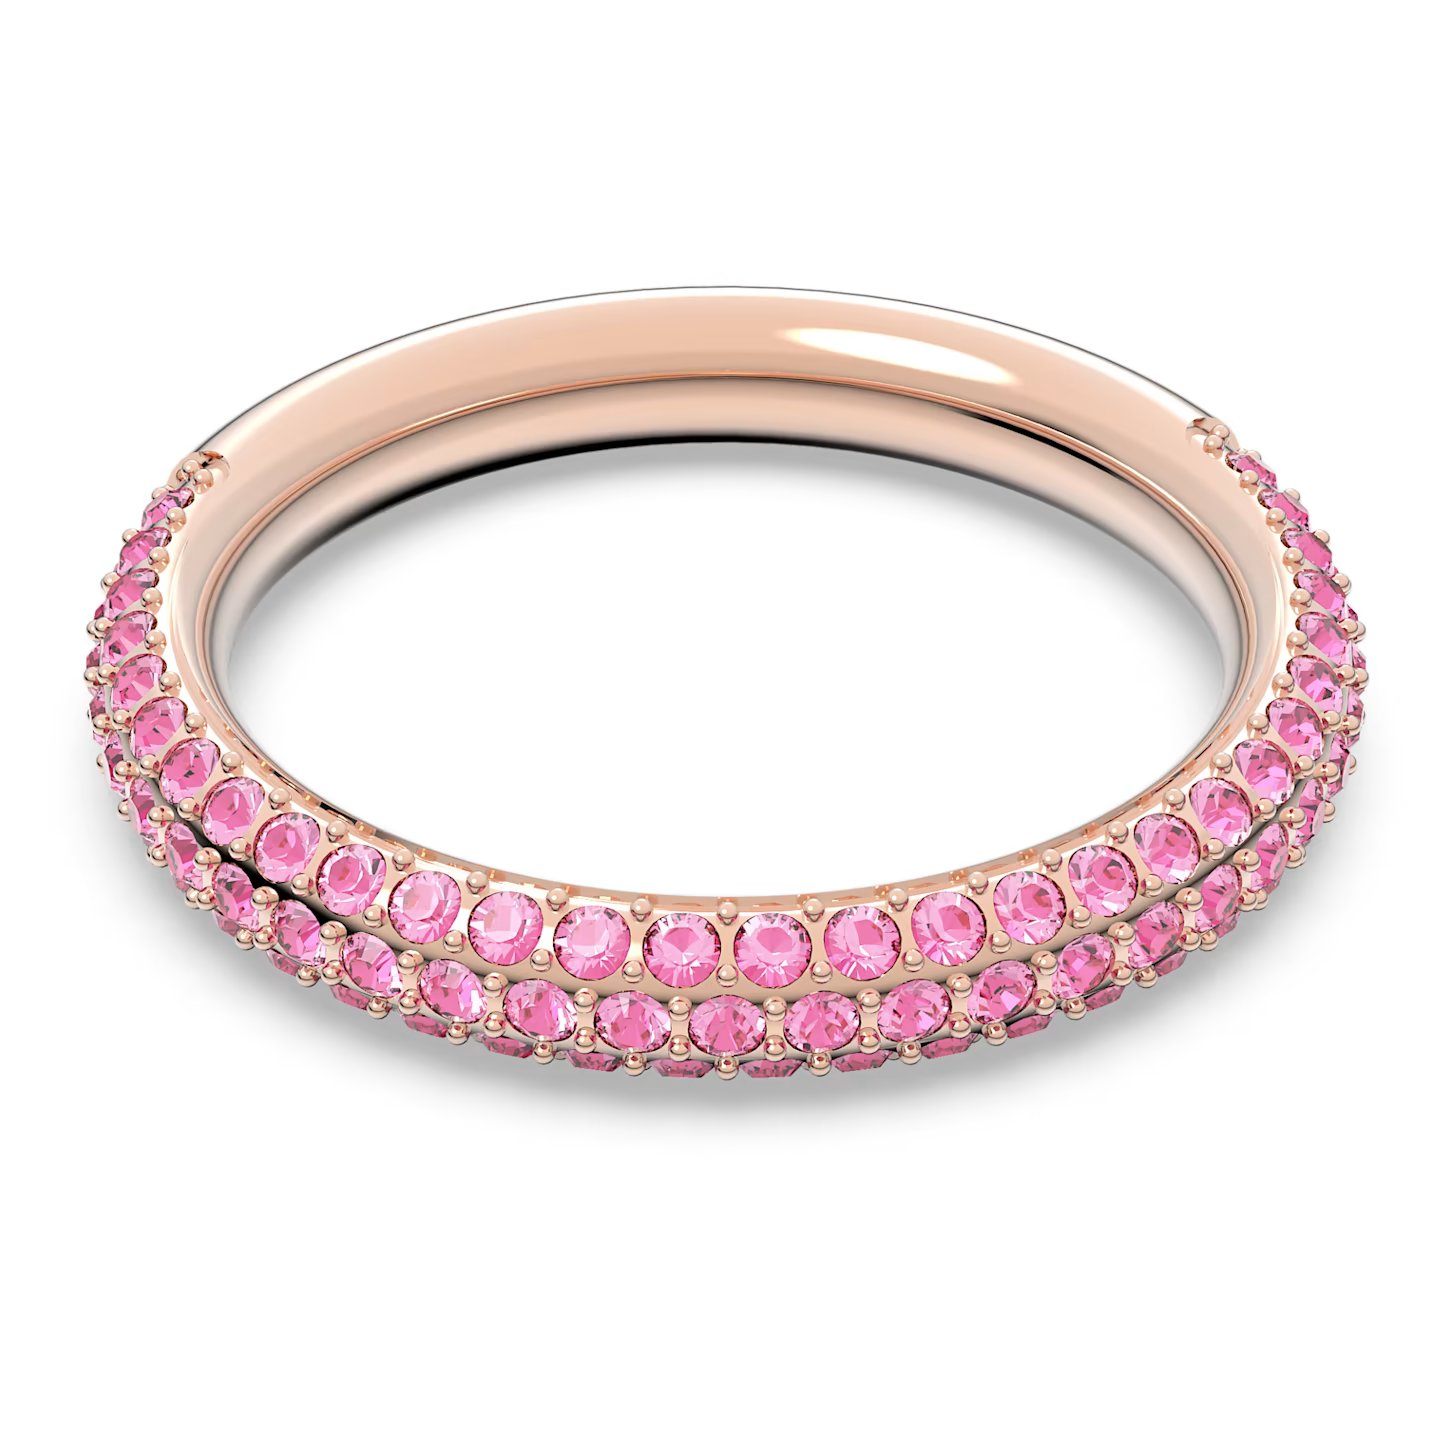 Swarovski Nádherný prsten s růžovými krystaly Swarovski Stone 5642910 56 mm